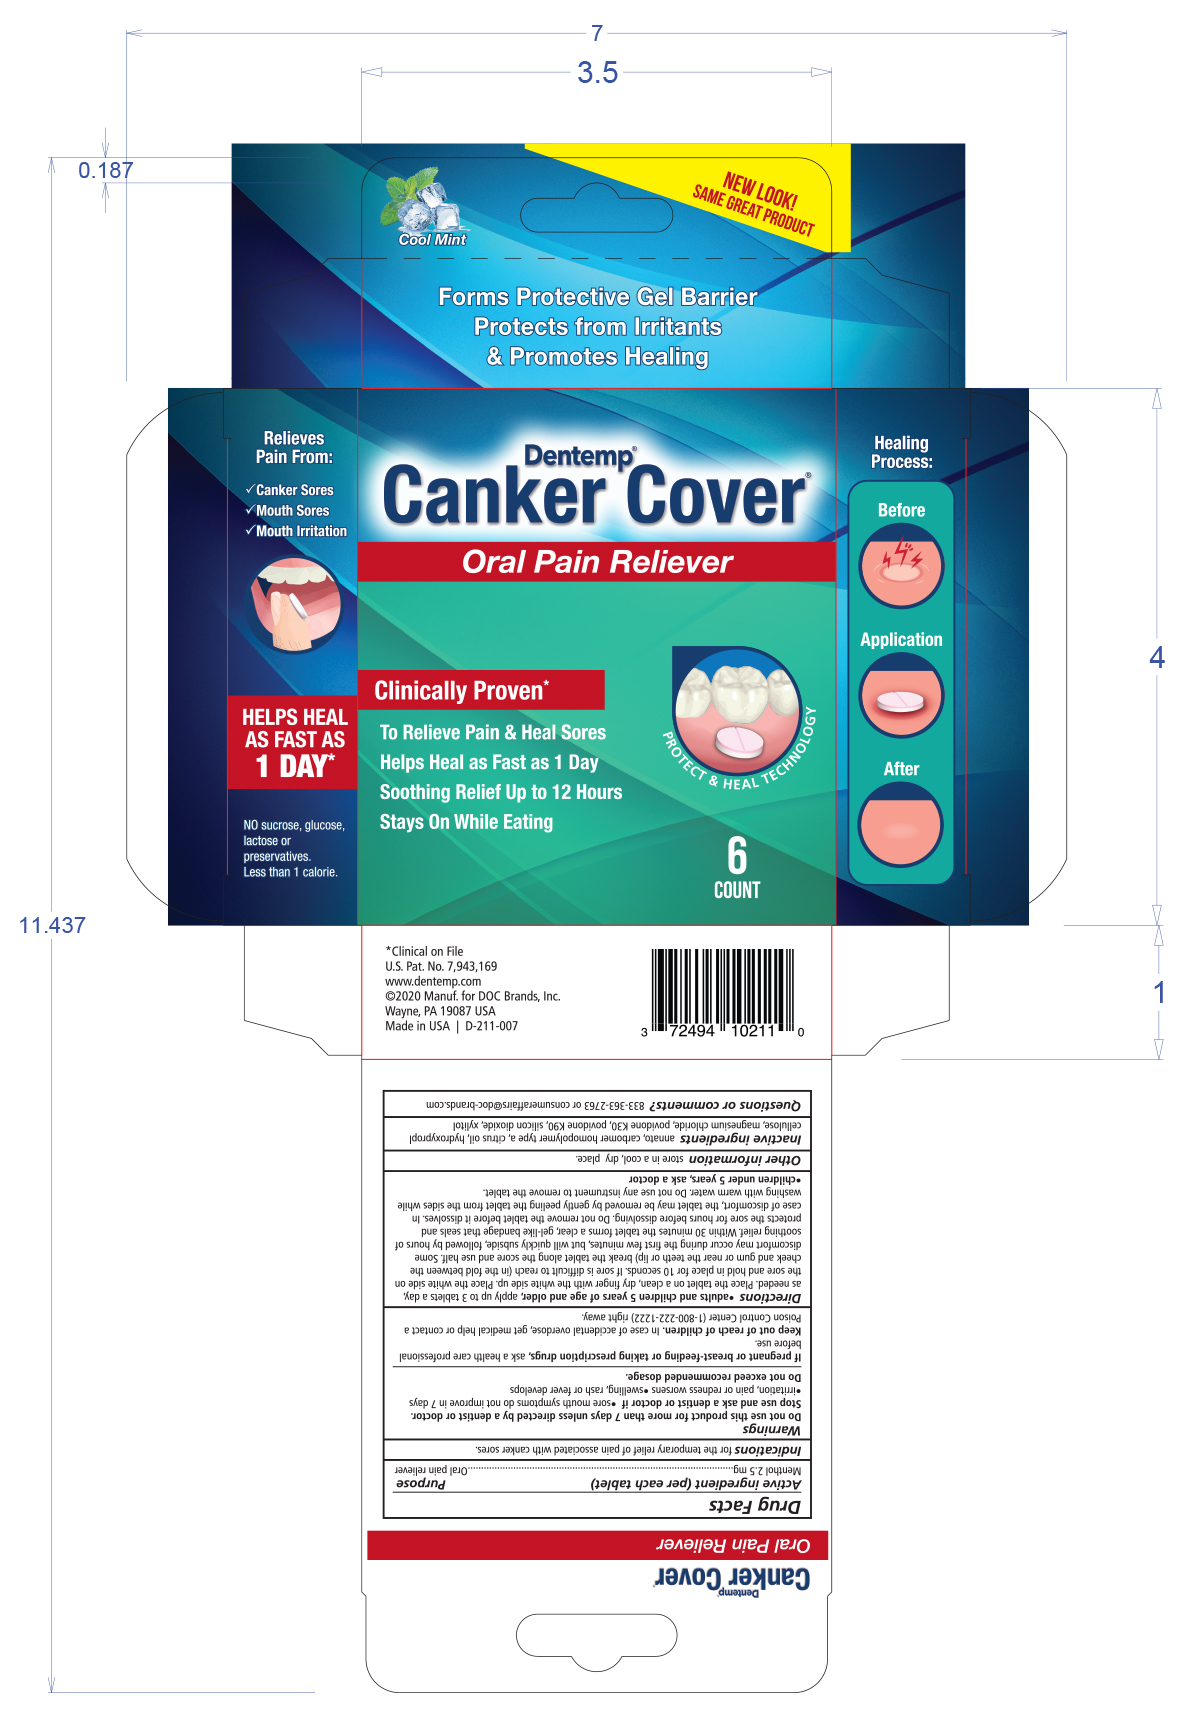 Dentemp Canker Cover Carton